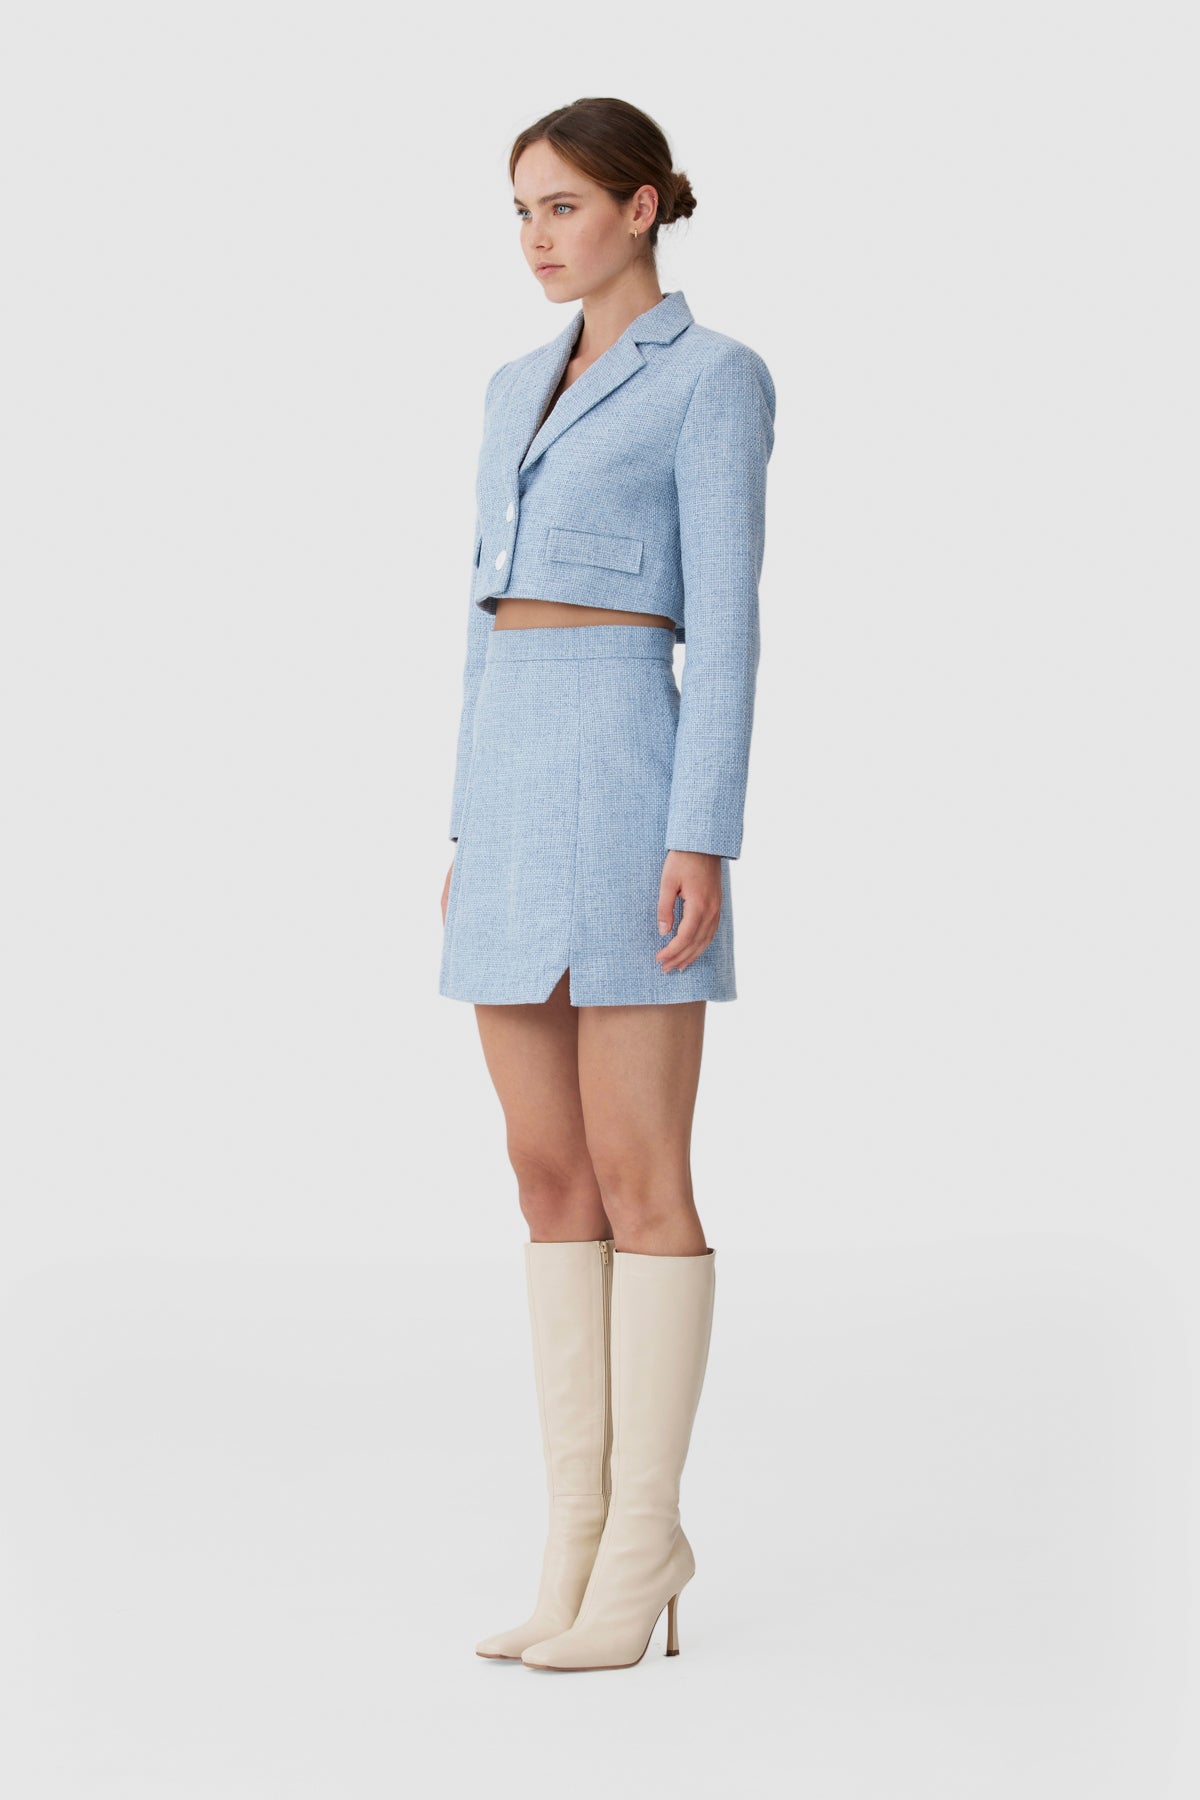 Keepsake - Winona Mini Skirt - Slate Blue